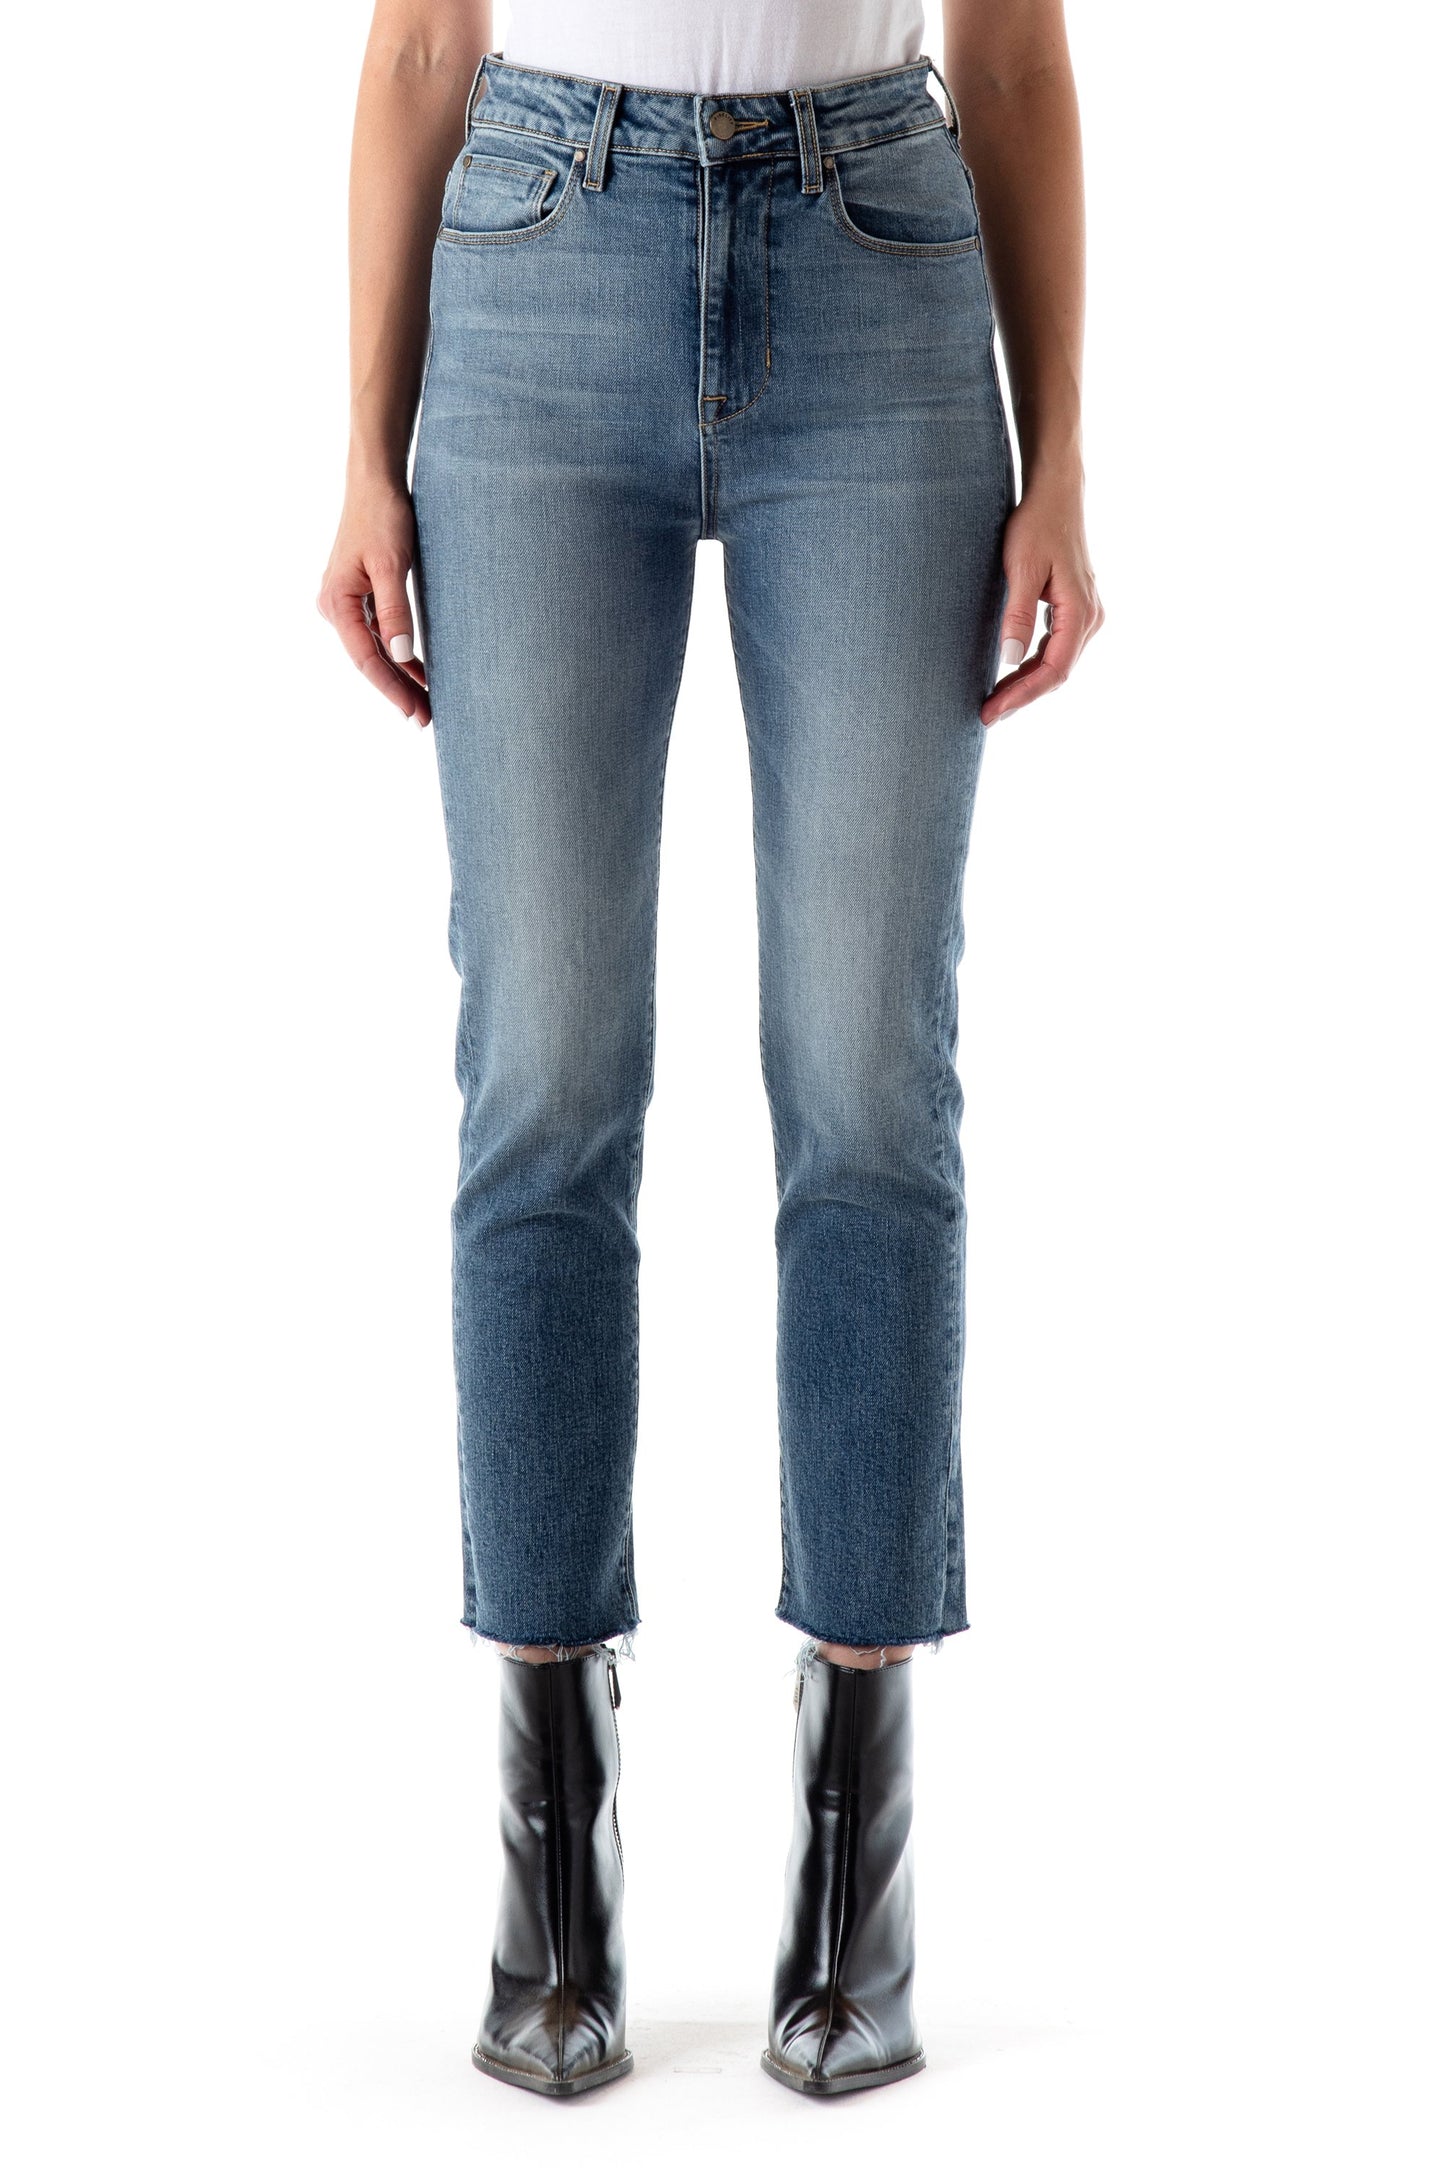 Fidelity Twiggy High Waist Crop Slim Jeans sz 27